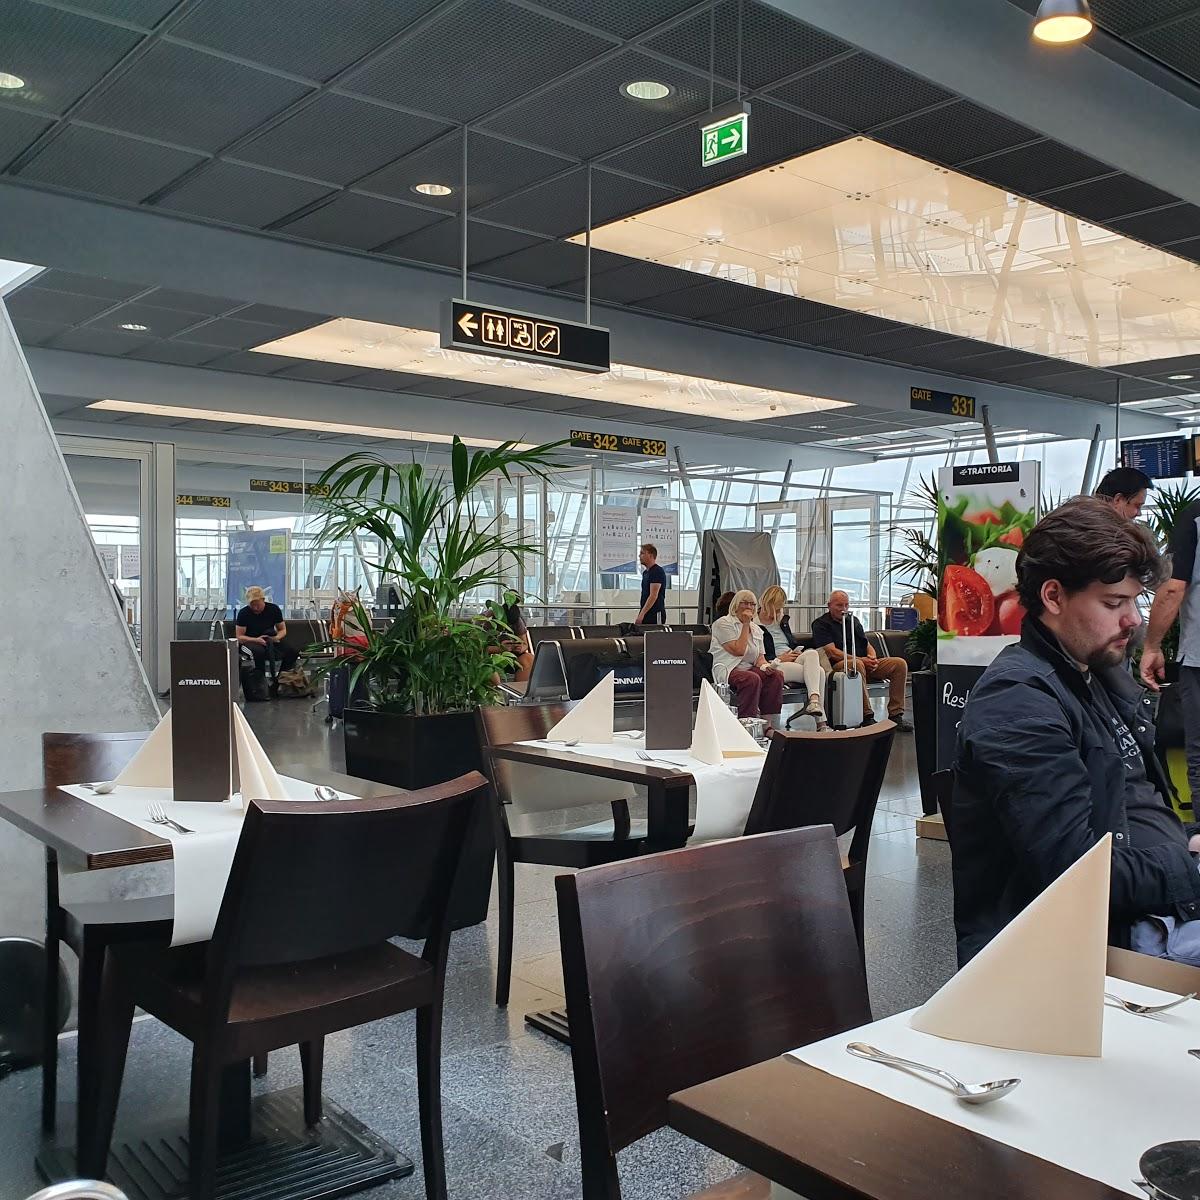 Restaurant "Trattoria Flughafen Stuttgart" in Leinfelden-Echterdingen